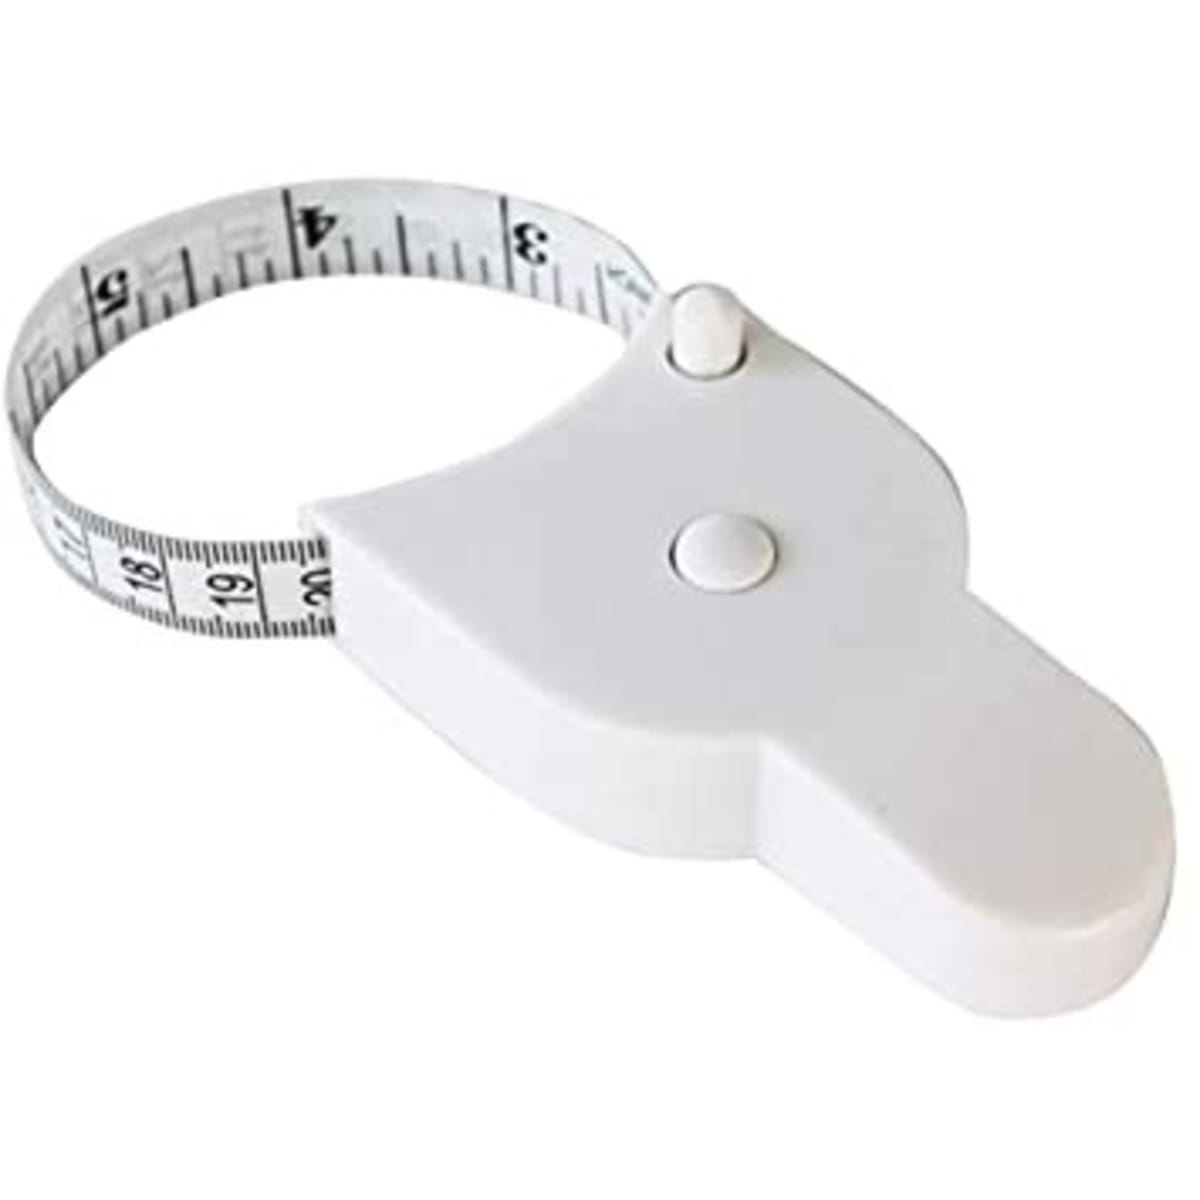 Prestige Medical Retractable Tape Measure, White (Model: 45-WHT)